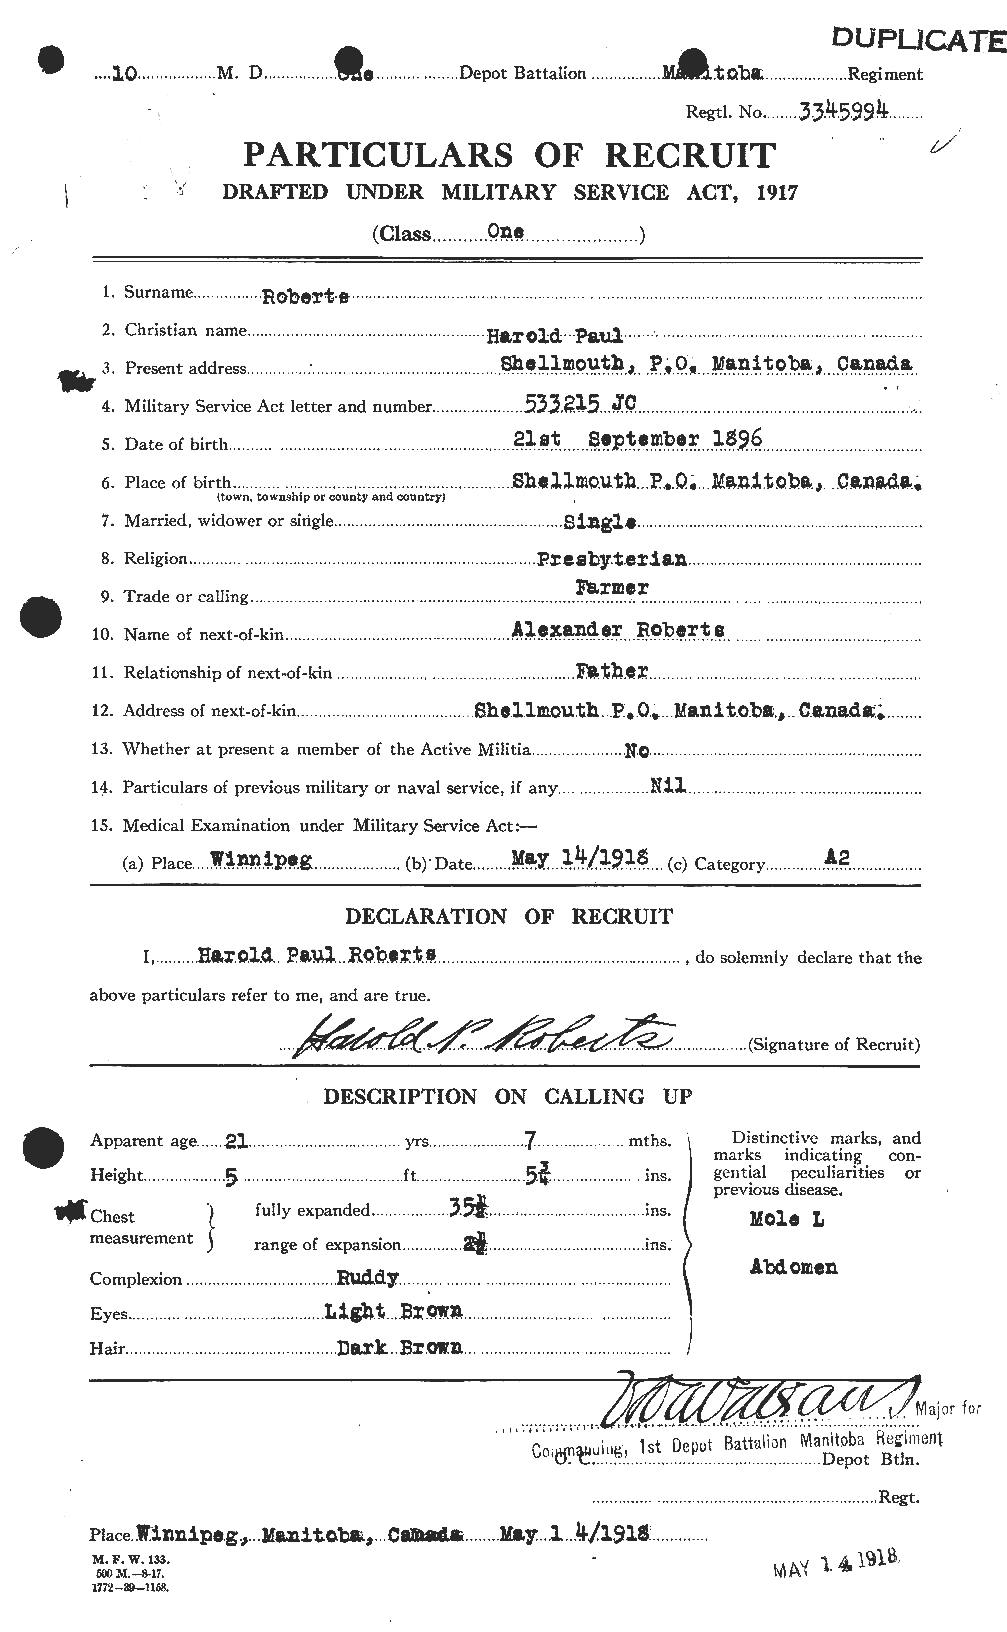 Dossiers du Personnel de la Première Guerre mondiale - CEC 606962a